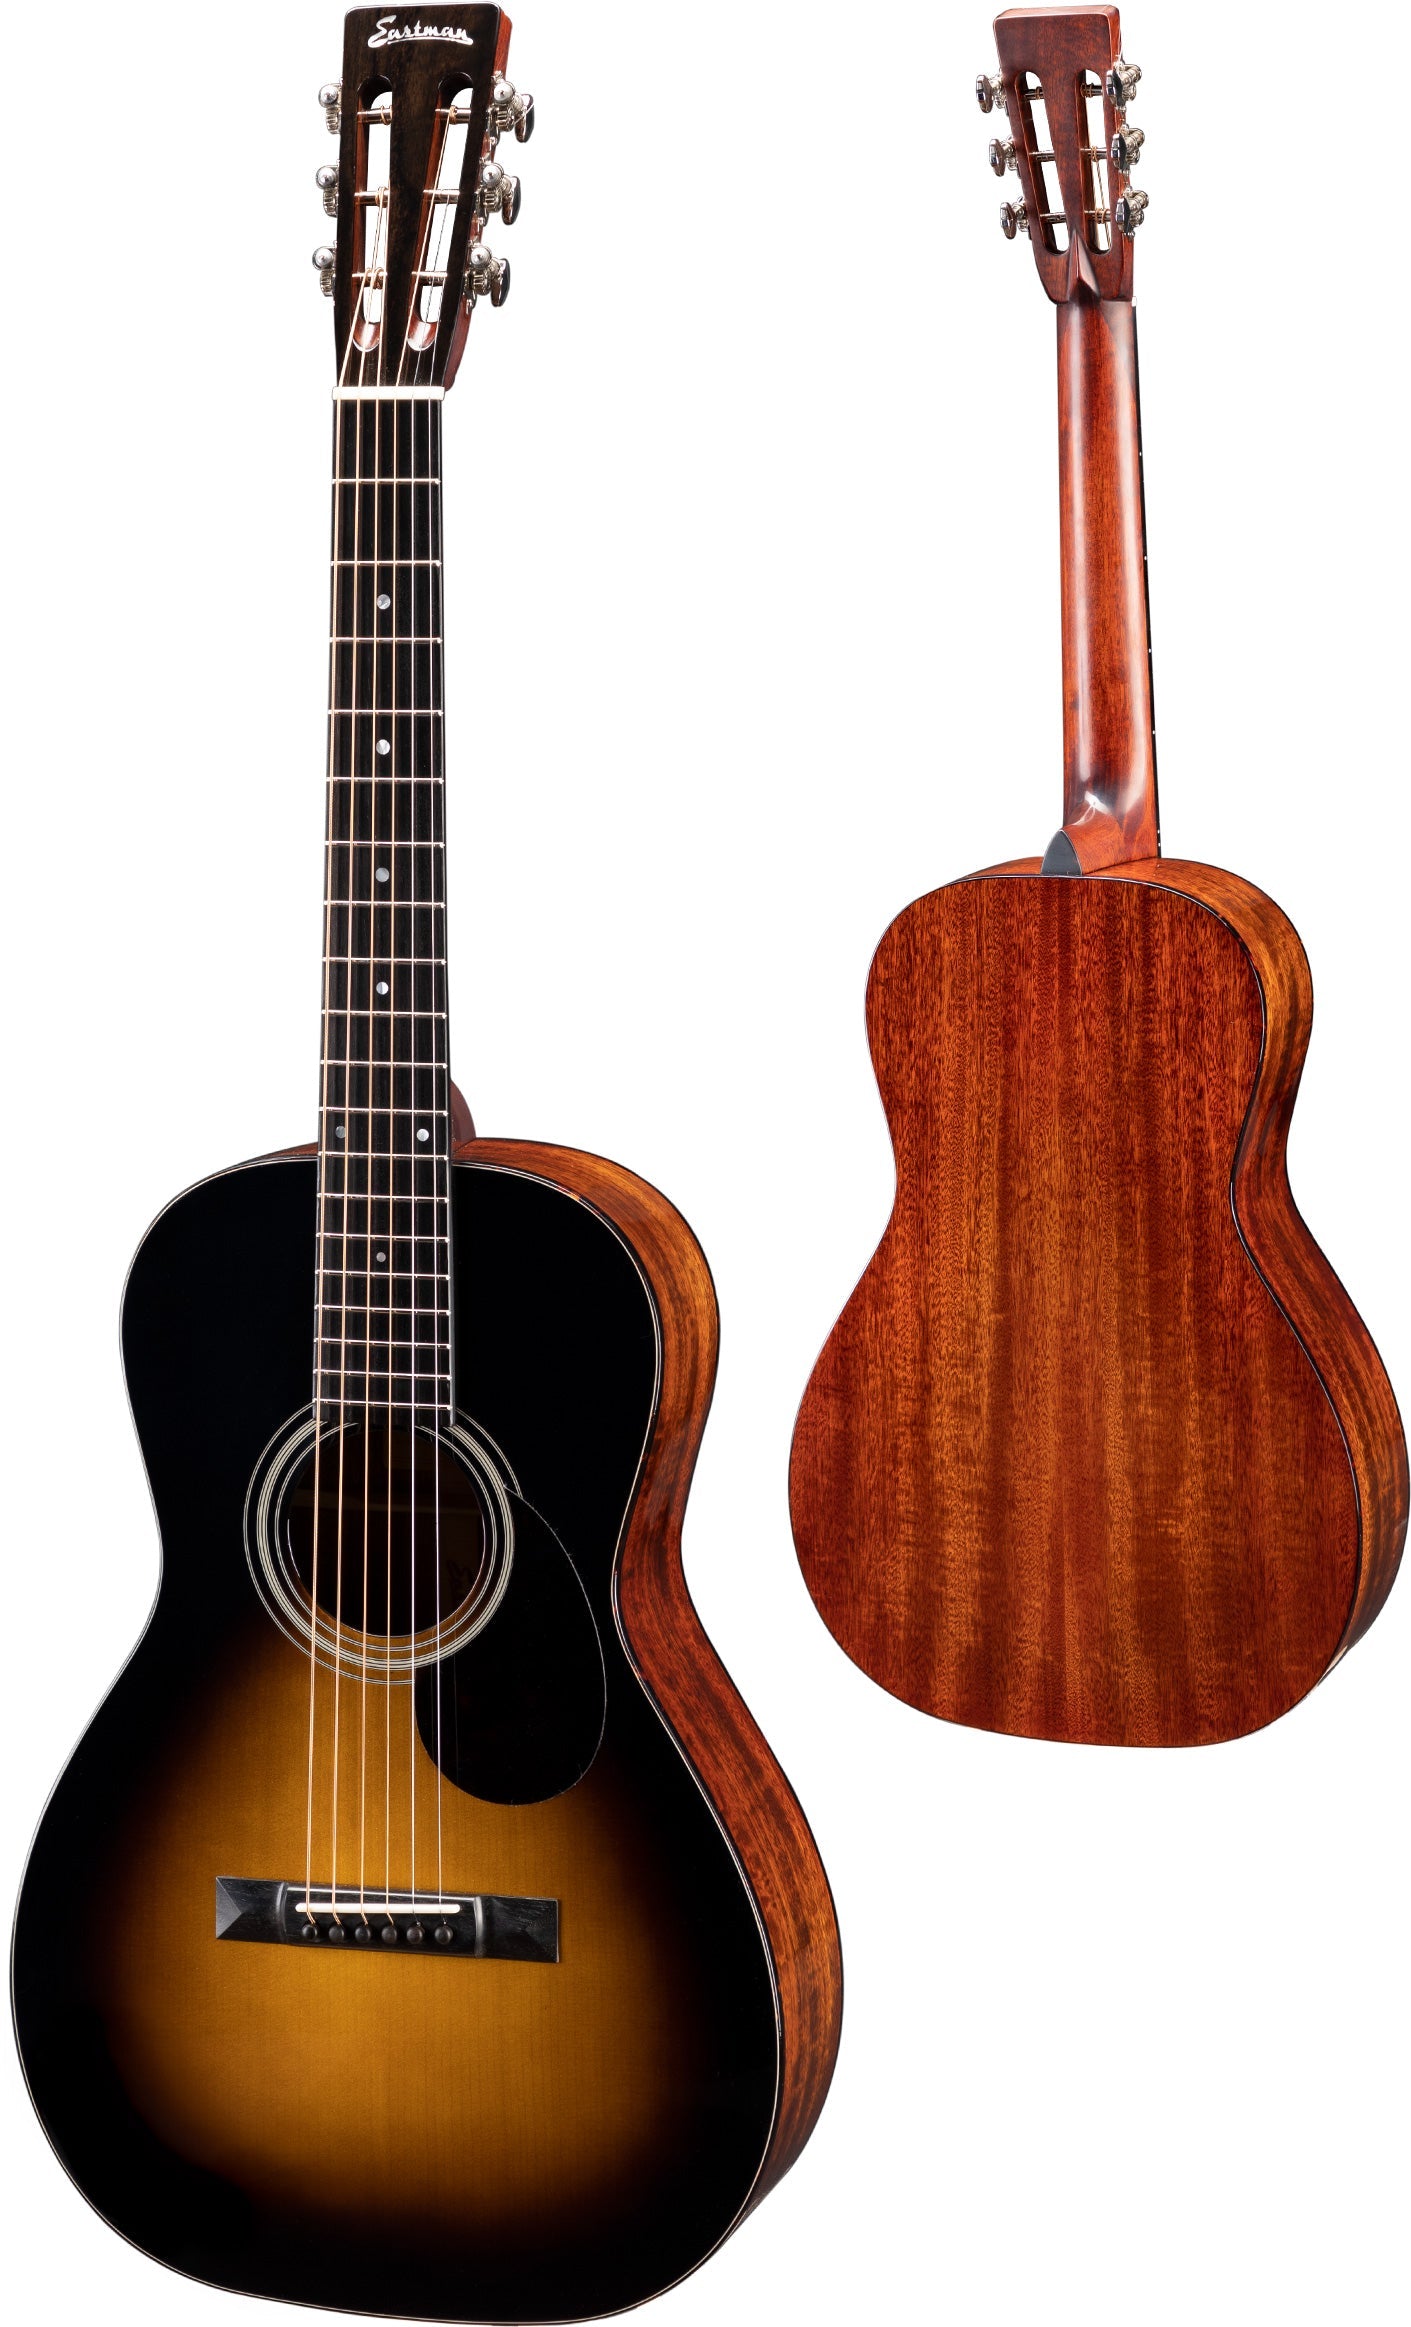 Eastman E10P SB TC Sunburst Parlour model, Acoustic Guitar for sale at Richards Guitars.